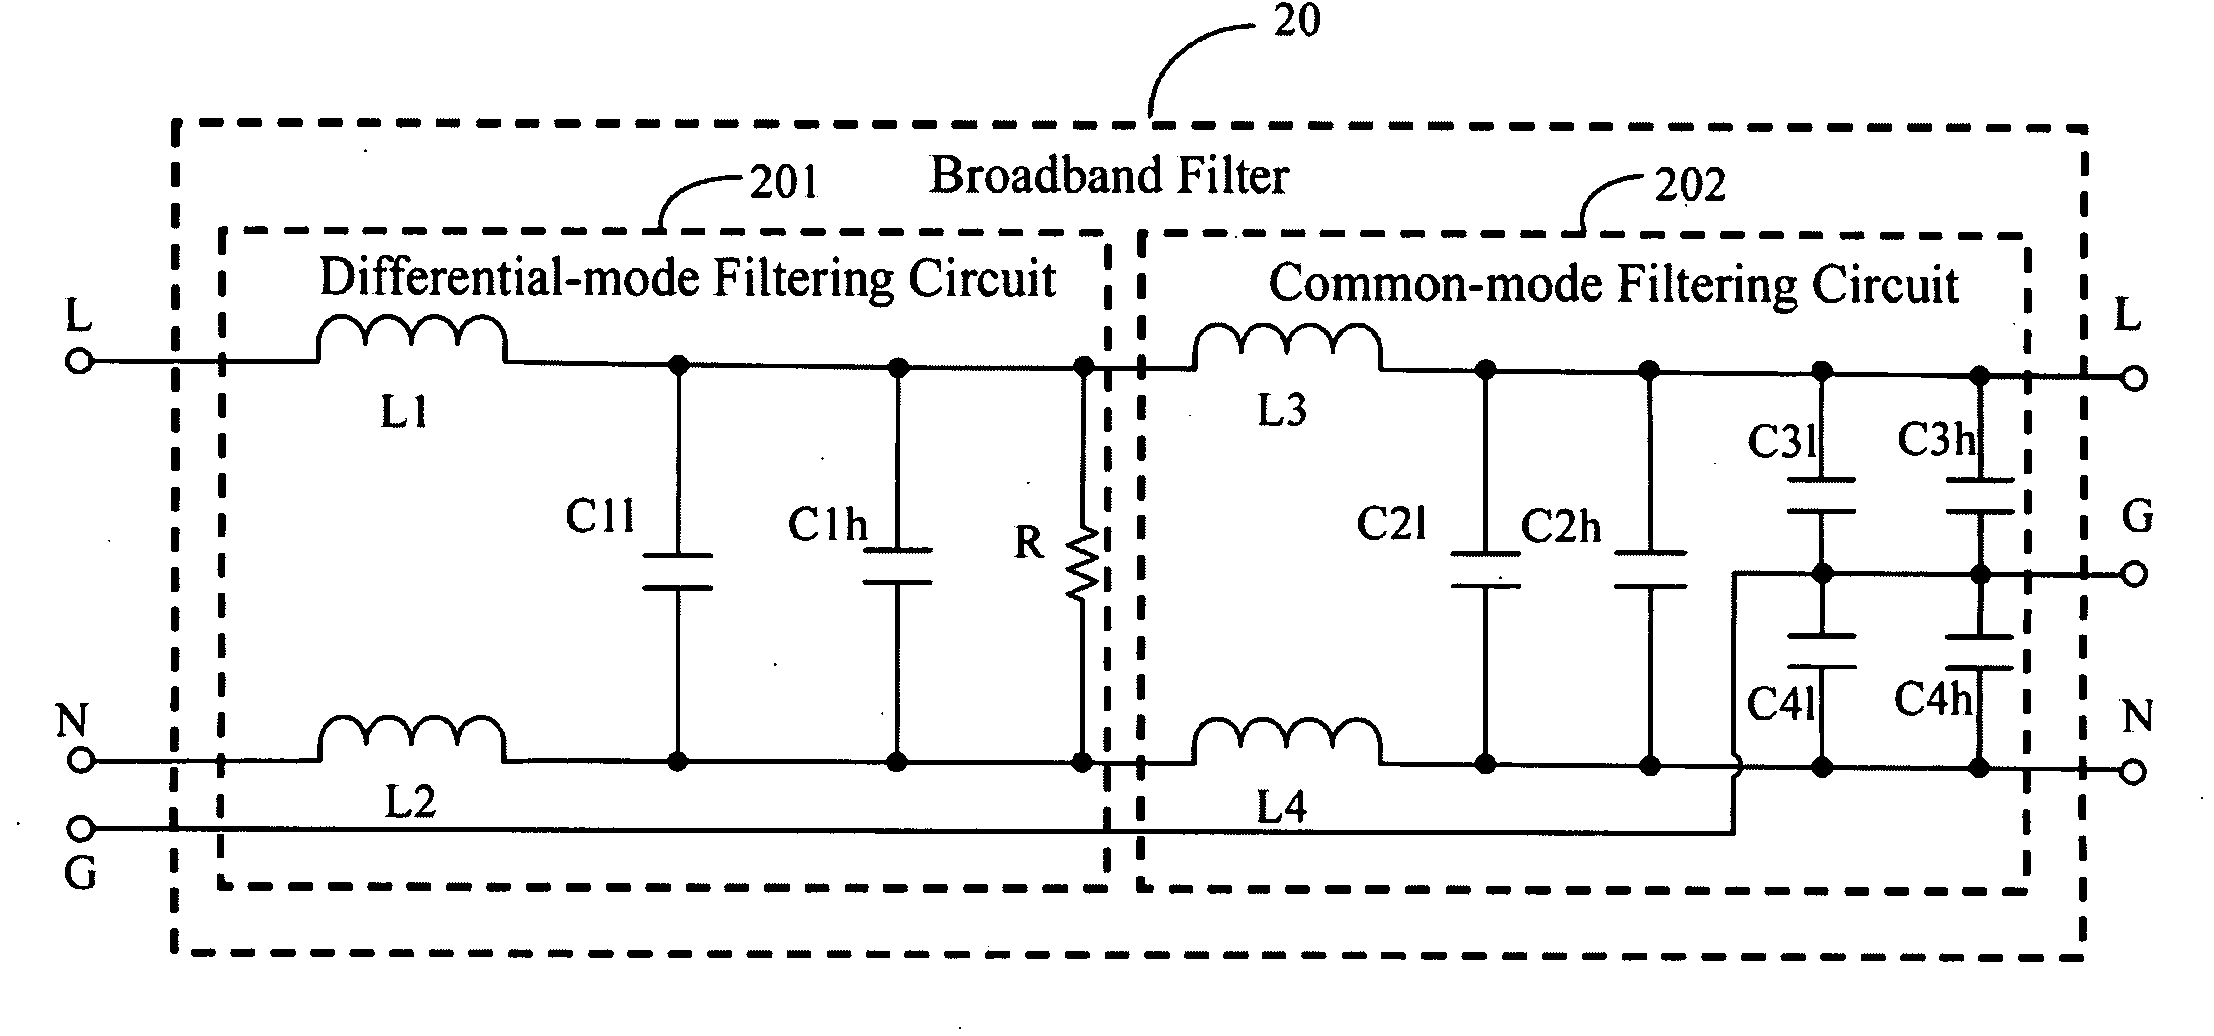 Broadband filter